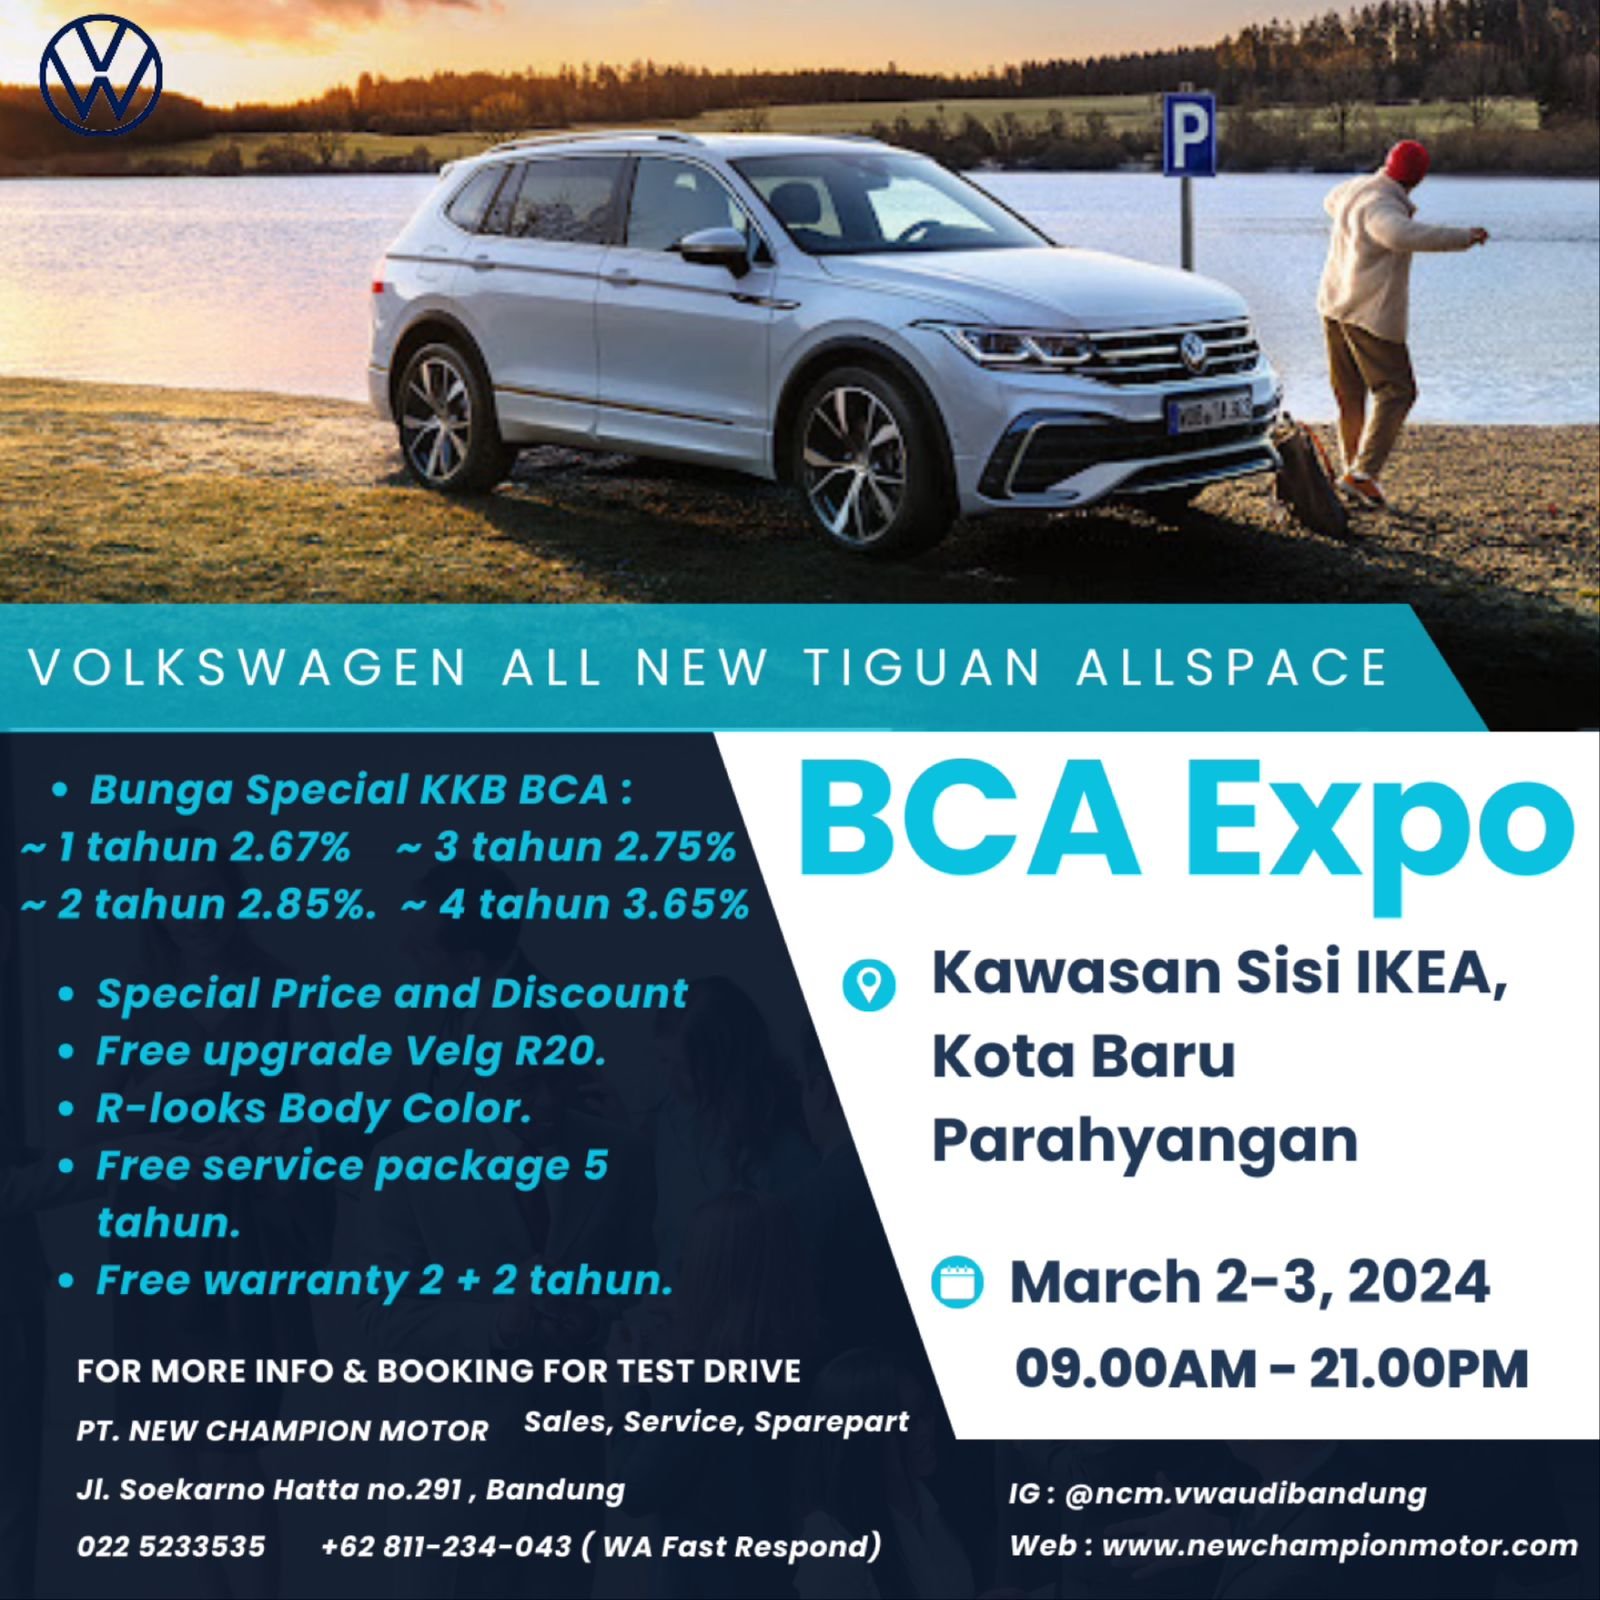 VW All New Tiguan Allspace @BCA Expo Bandung